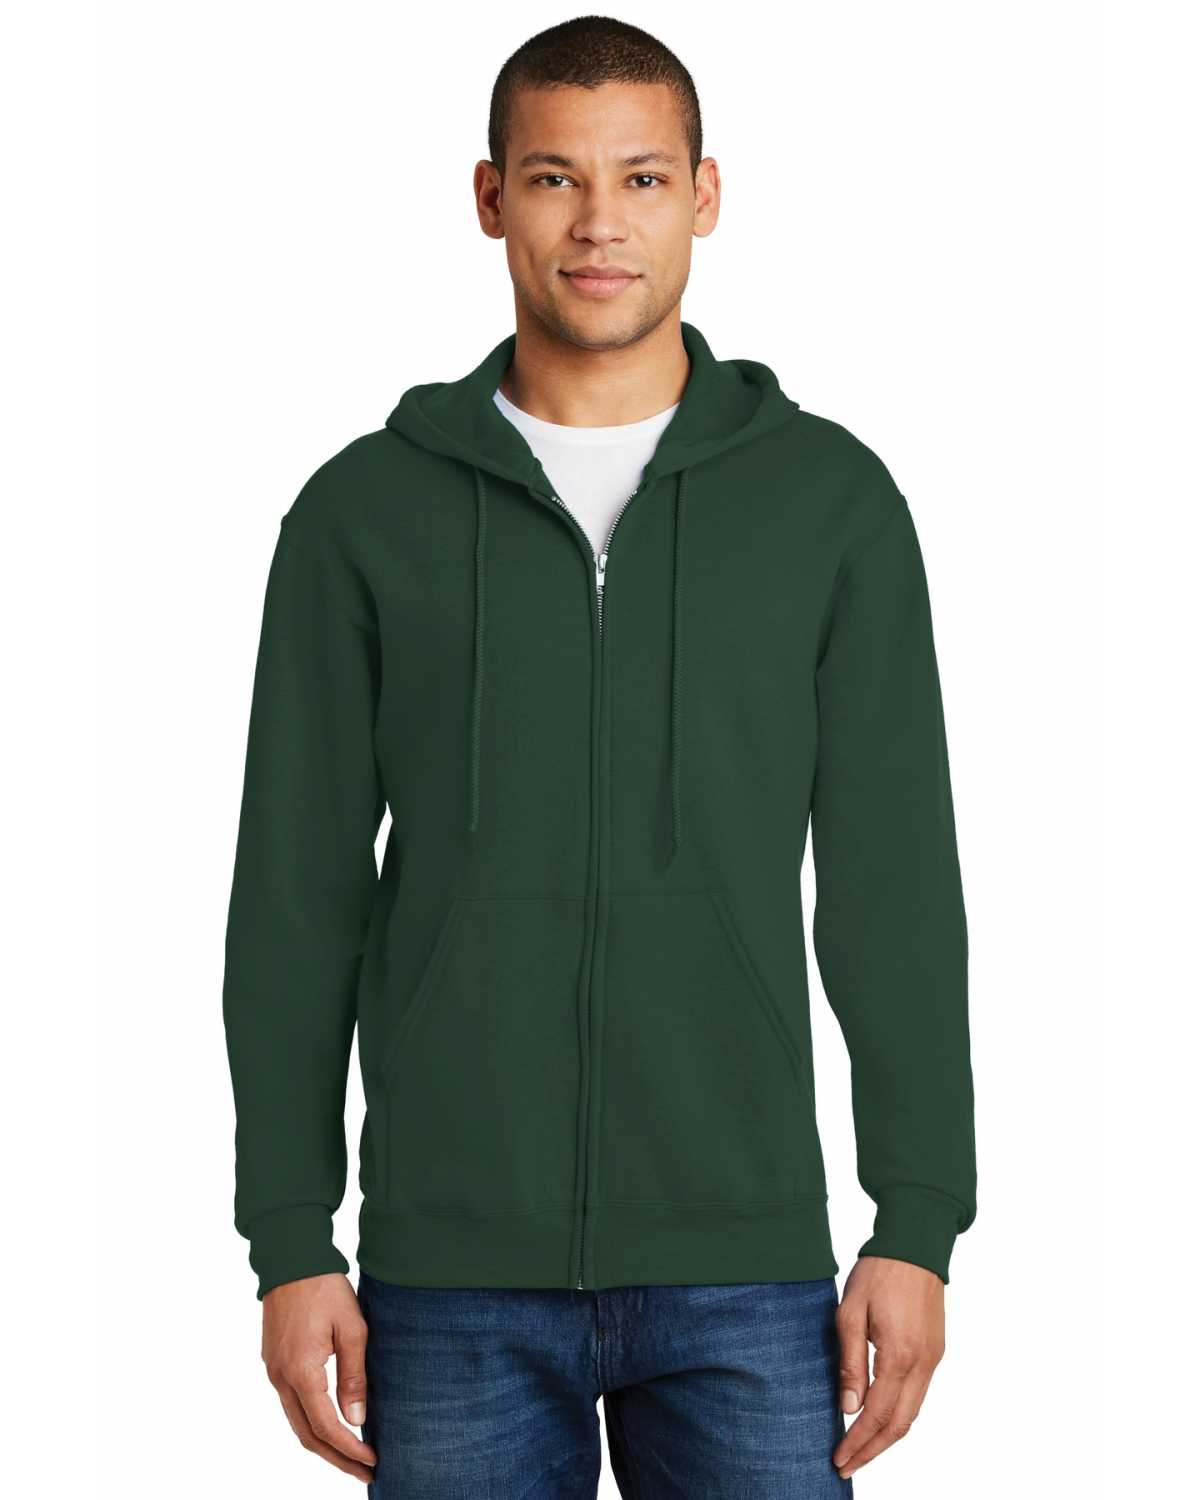 Jerzees 993M NuBlend Full-Zip Hooded Sweatshirt on discount ...